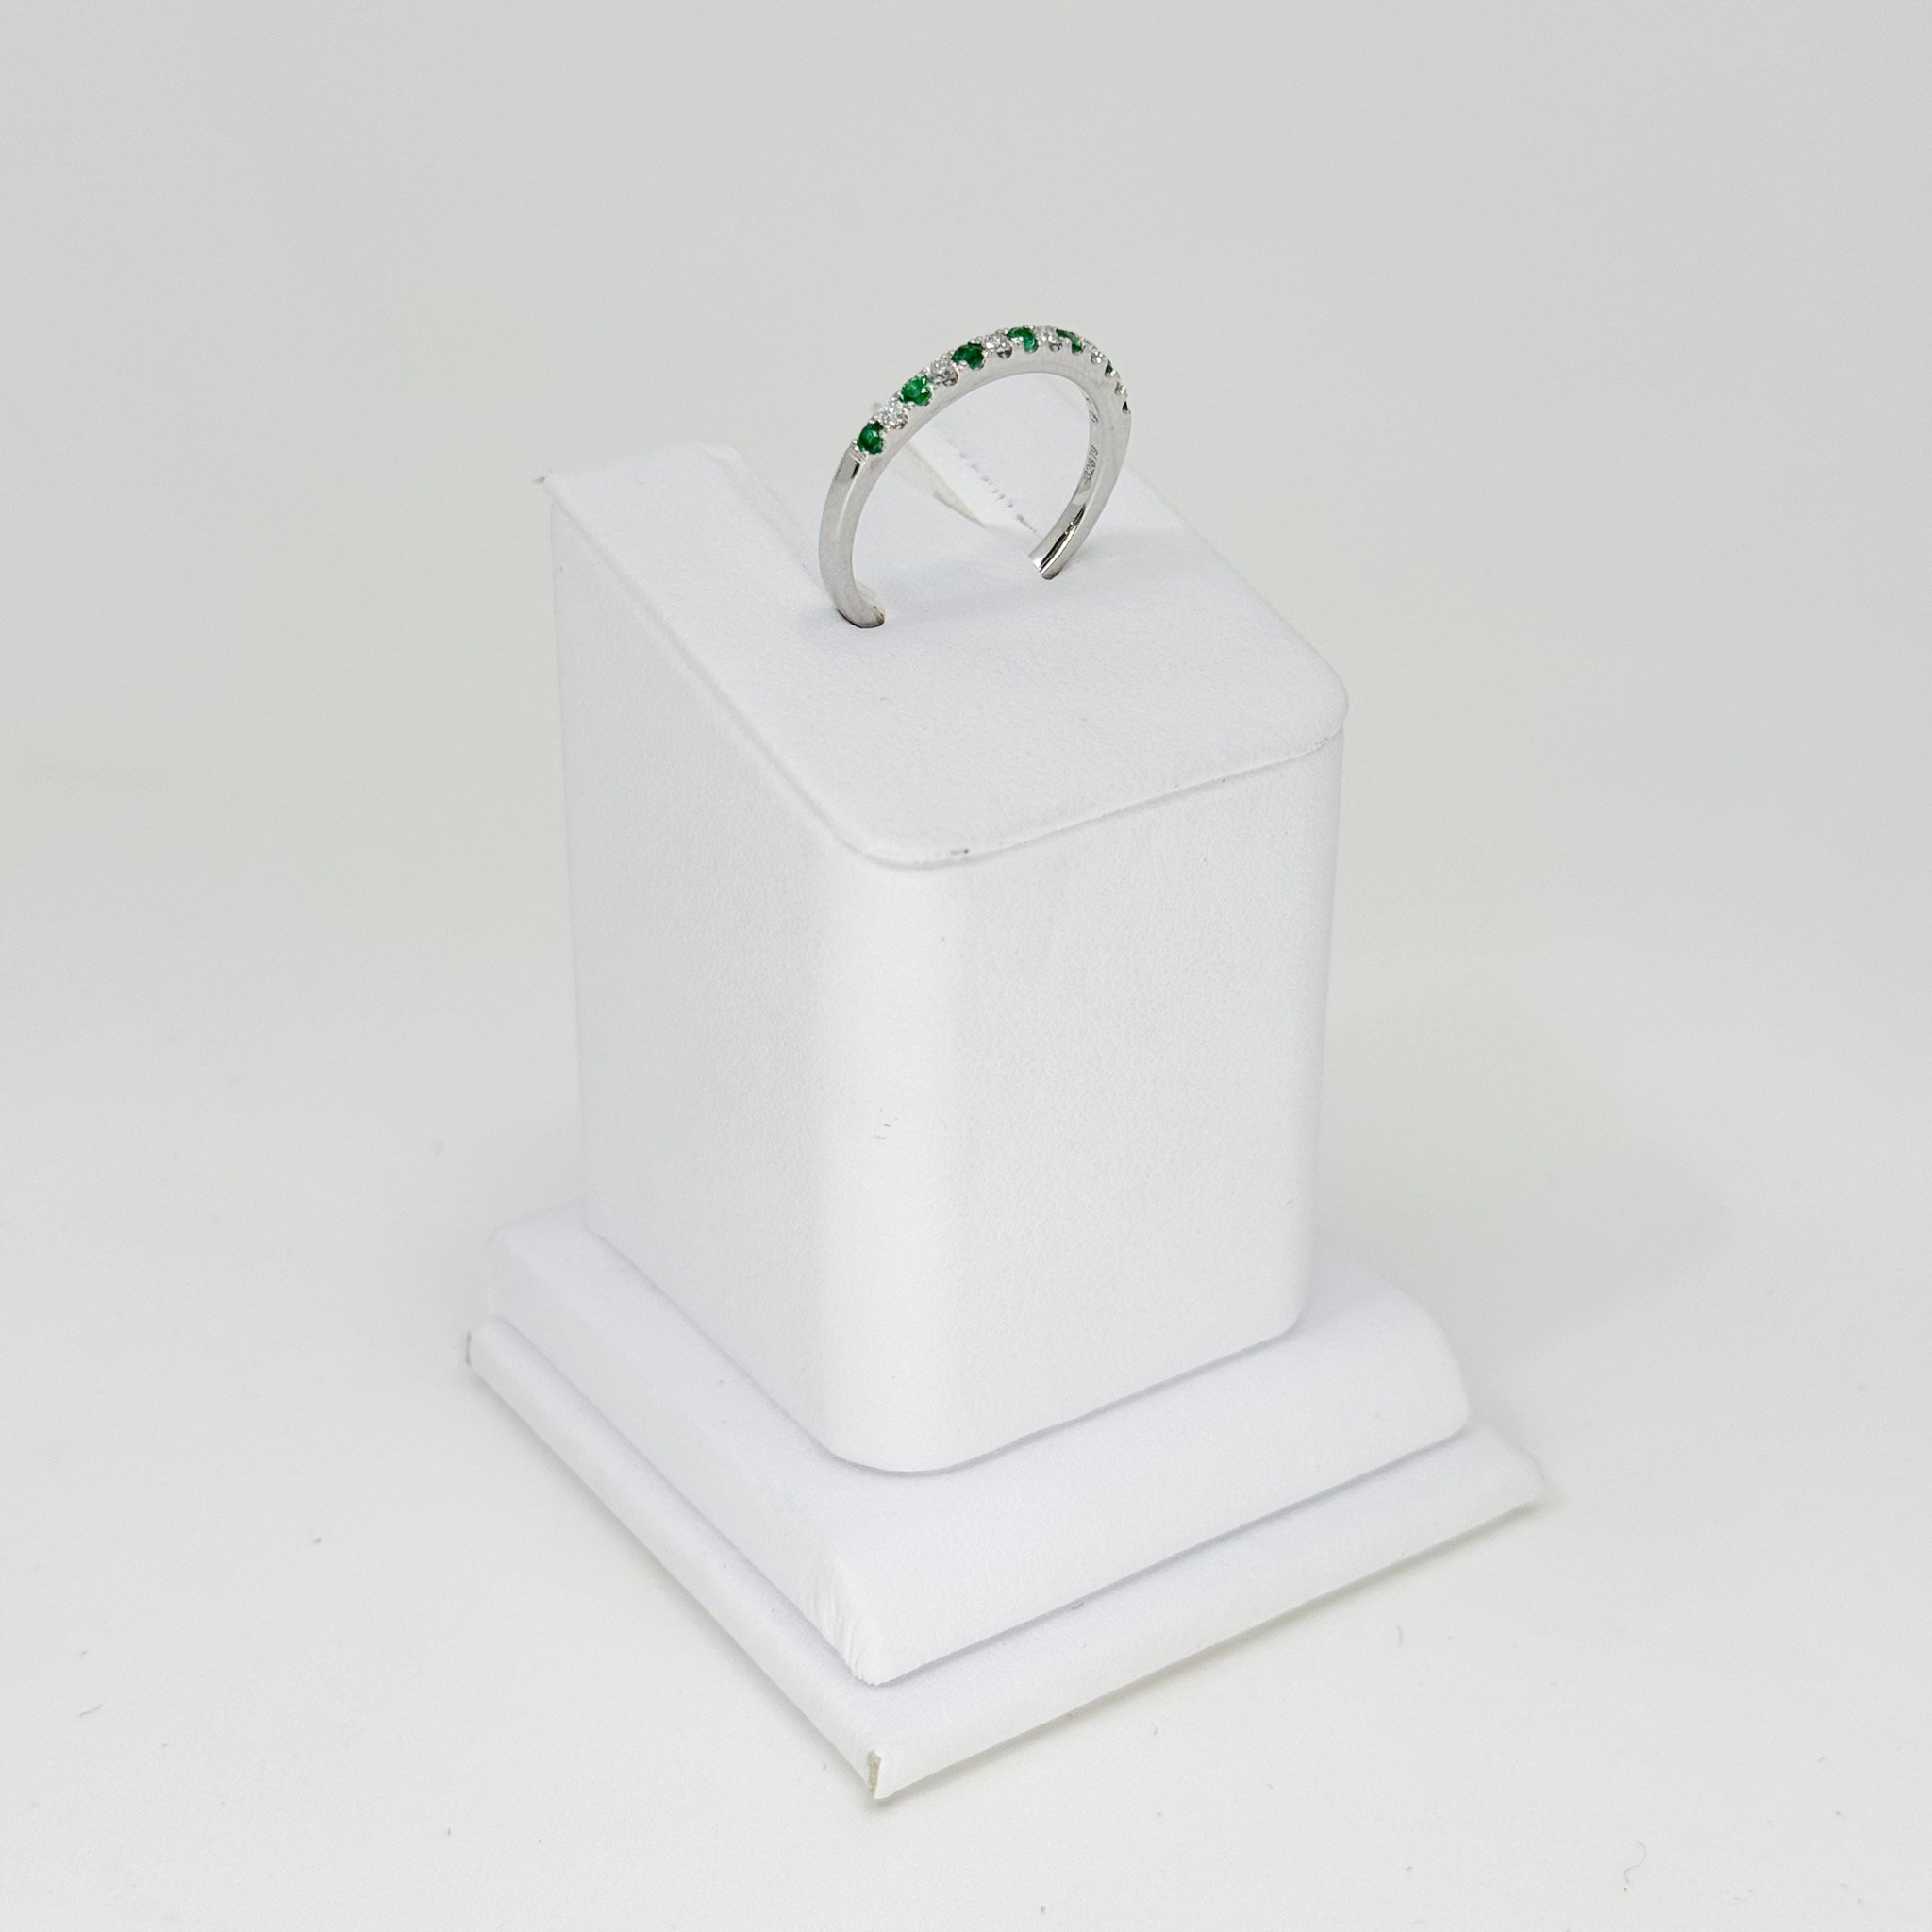 Alternating emerald and diamond band 7 emeralds 0.15ct, 6 round diamonds 0.11 ct, 14kw